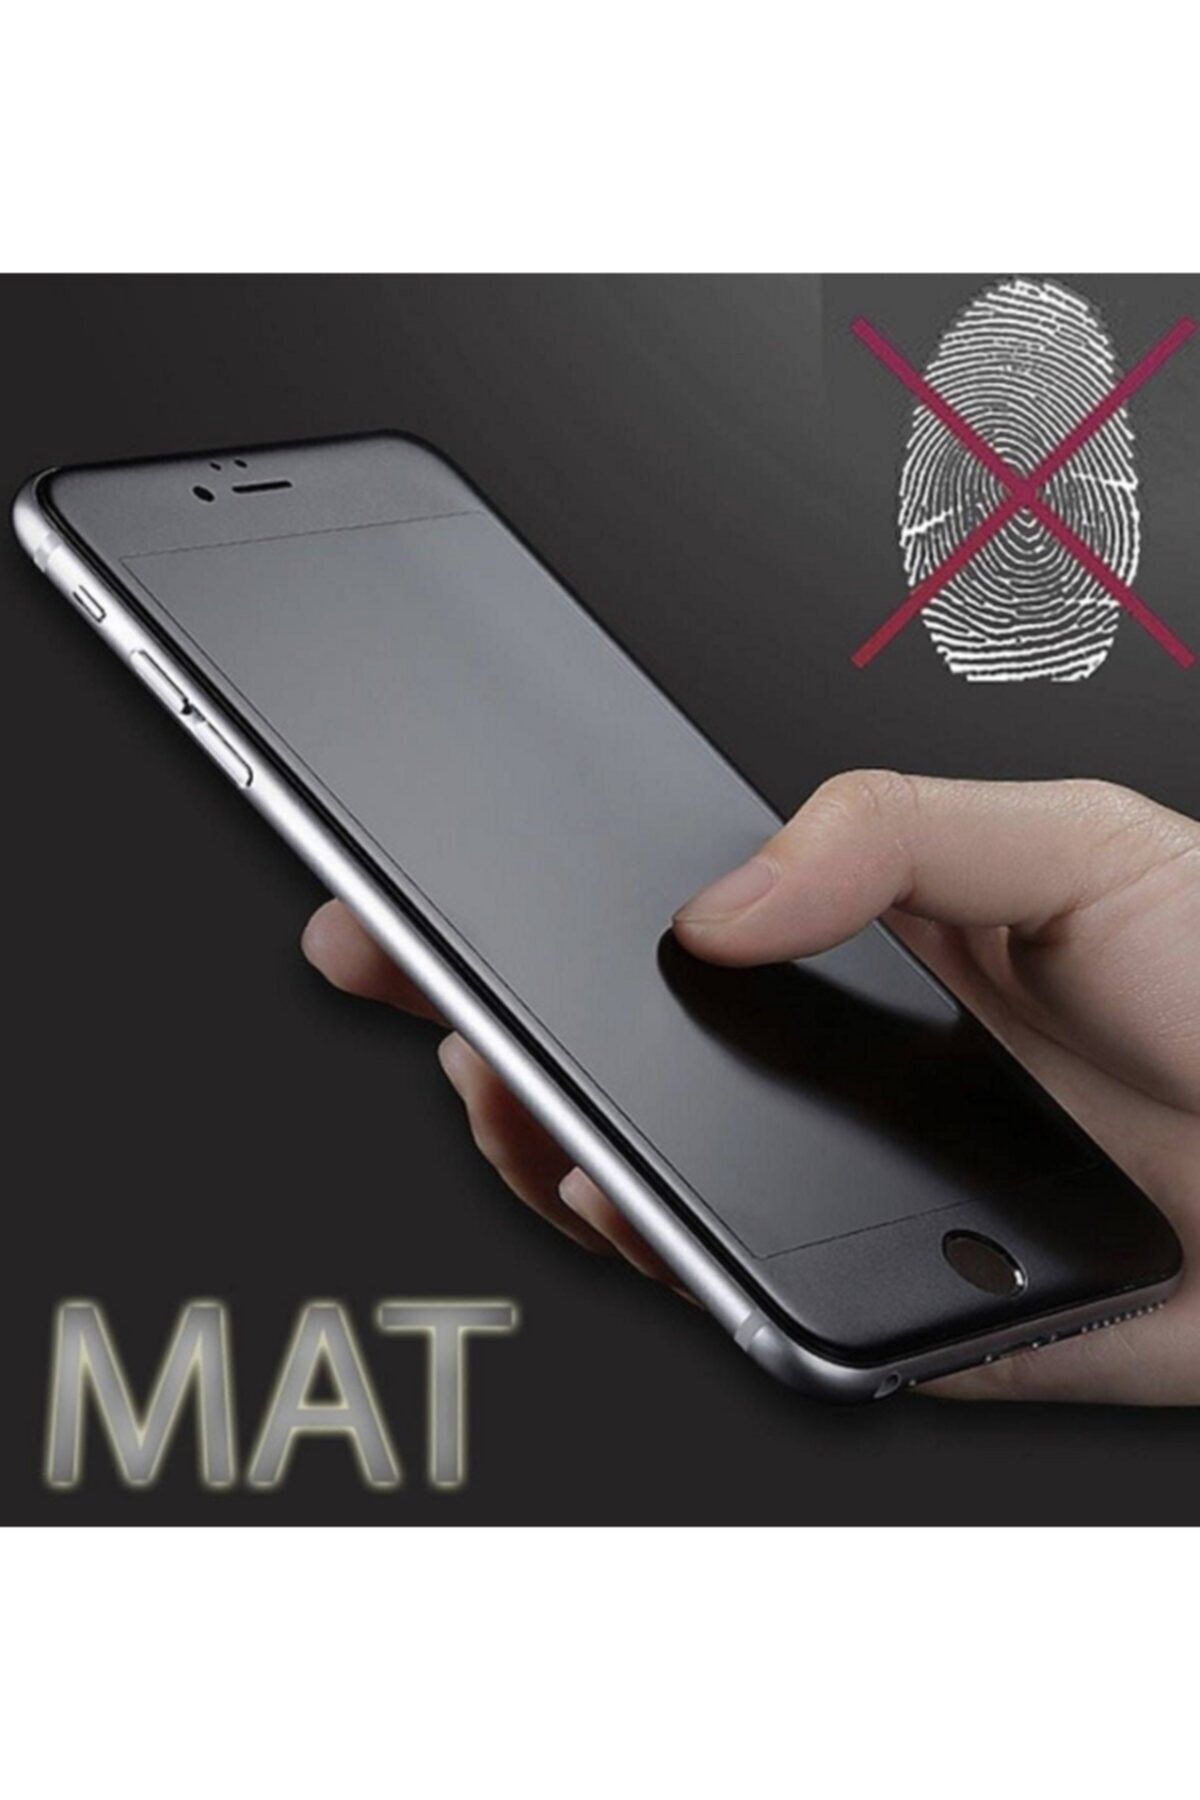 Go Aksesuar Iphone 6 / 6s / 7 / 8 / Se 2020 Nano Mat Seramik(ceramic) Siyah Ekran Koruyucu